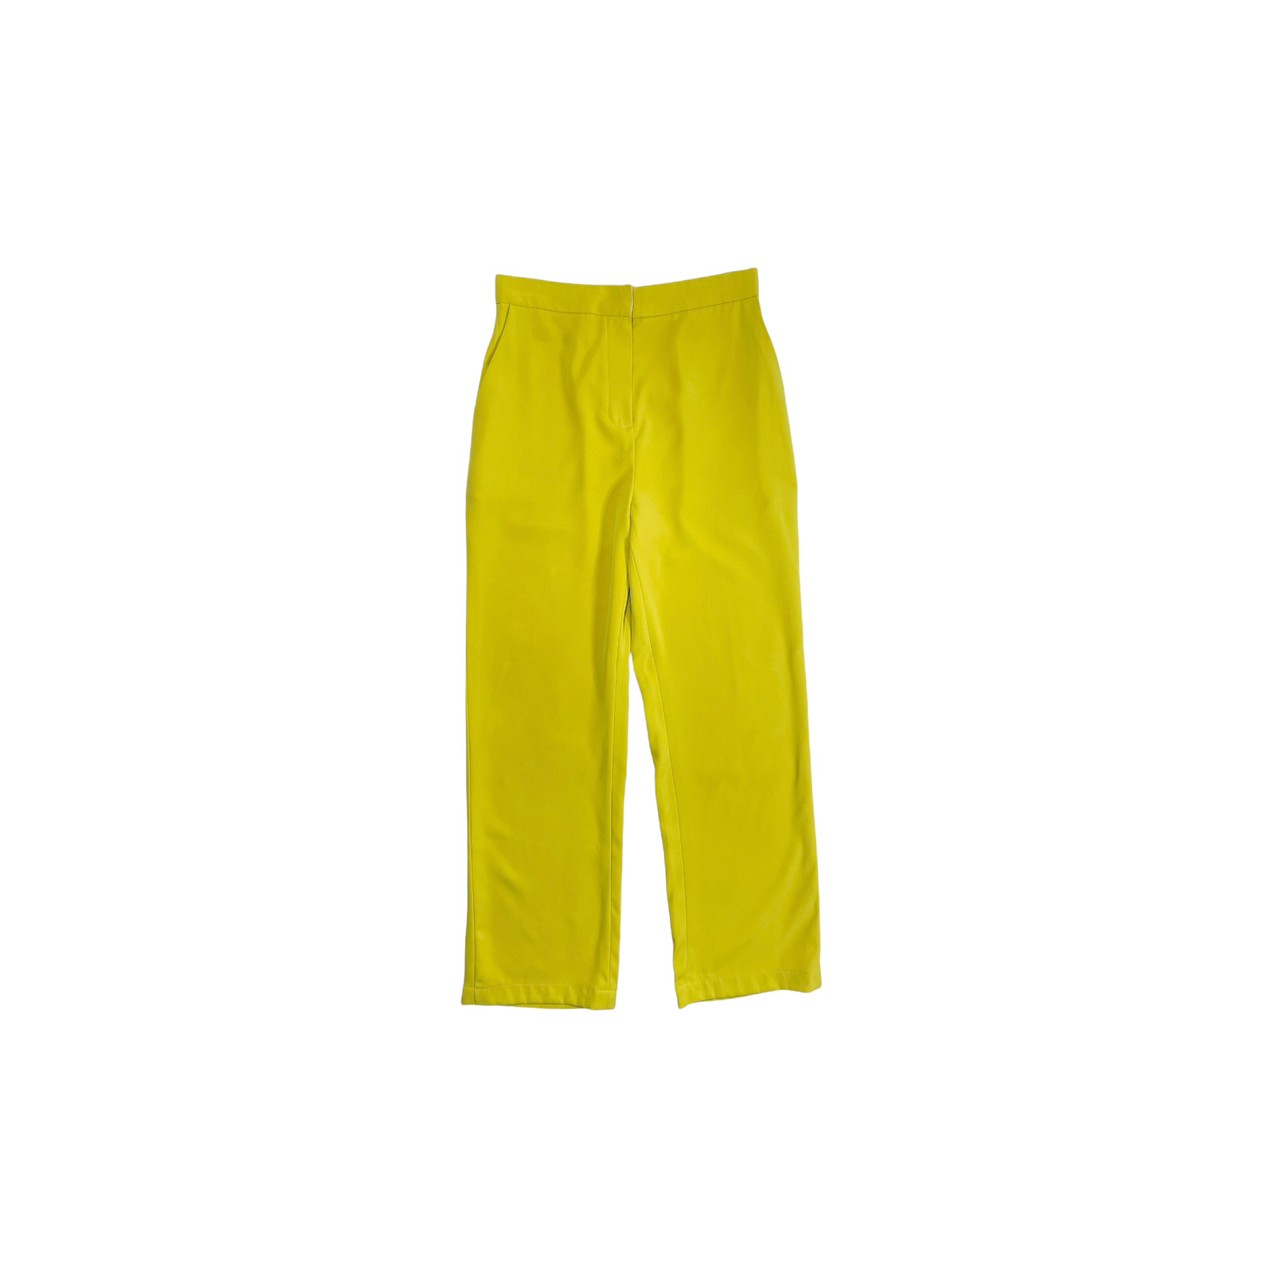 Sydney Pants in Lemon